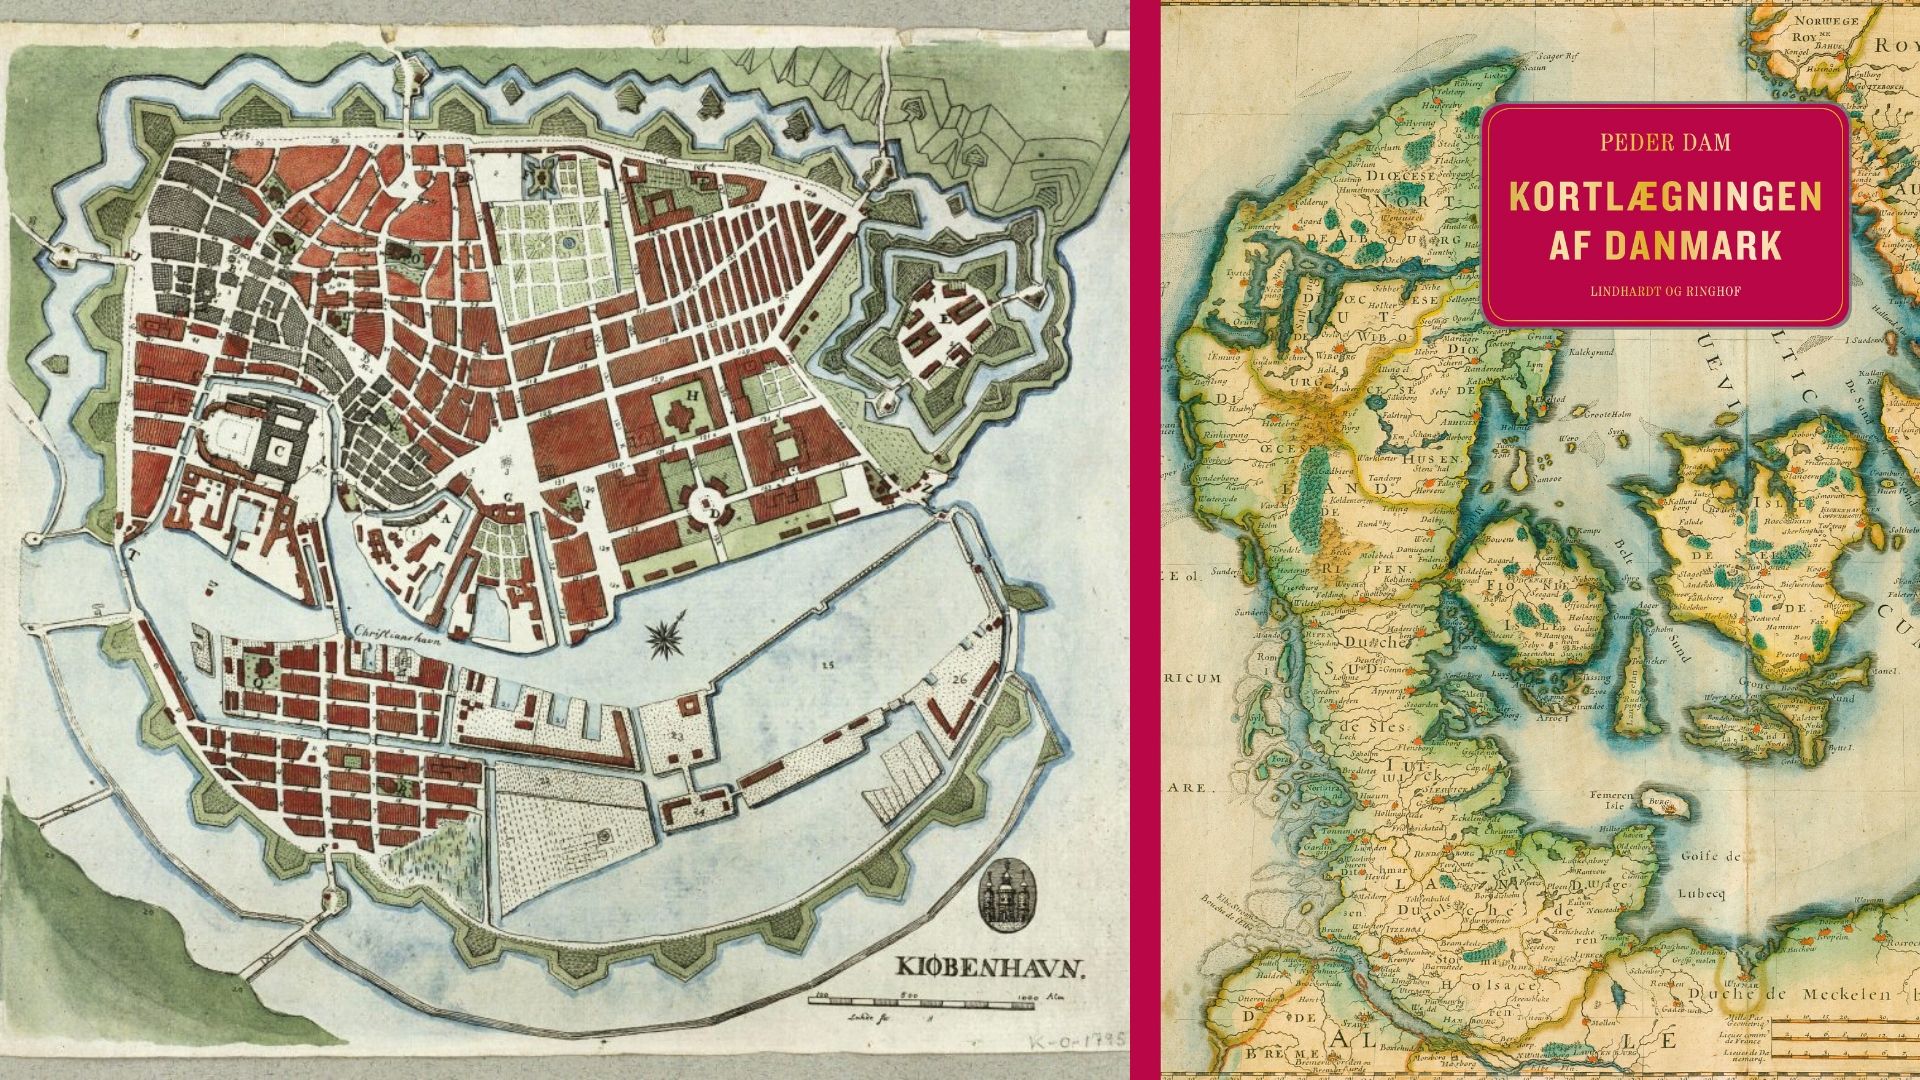 Sådan har København udviklet sig. Kortlægningen af Danmark